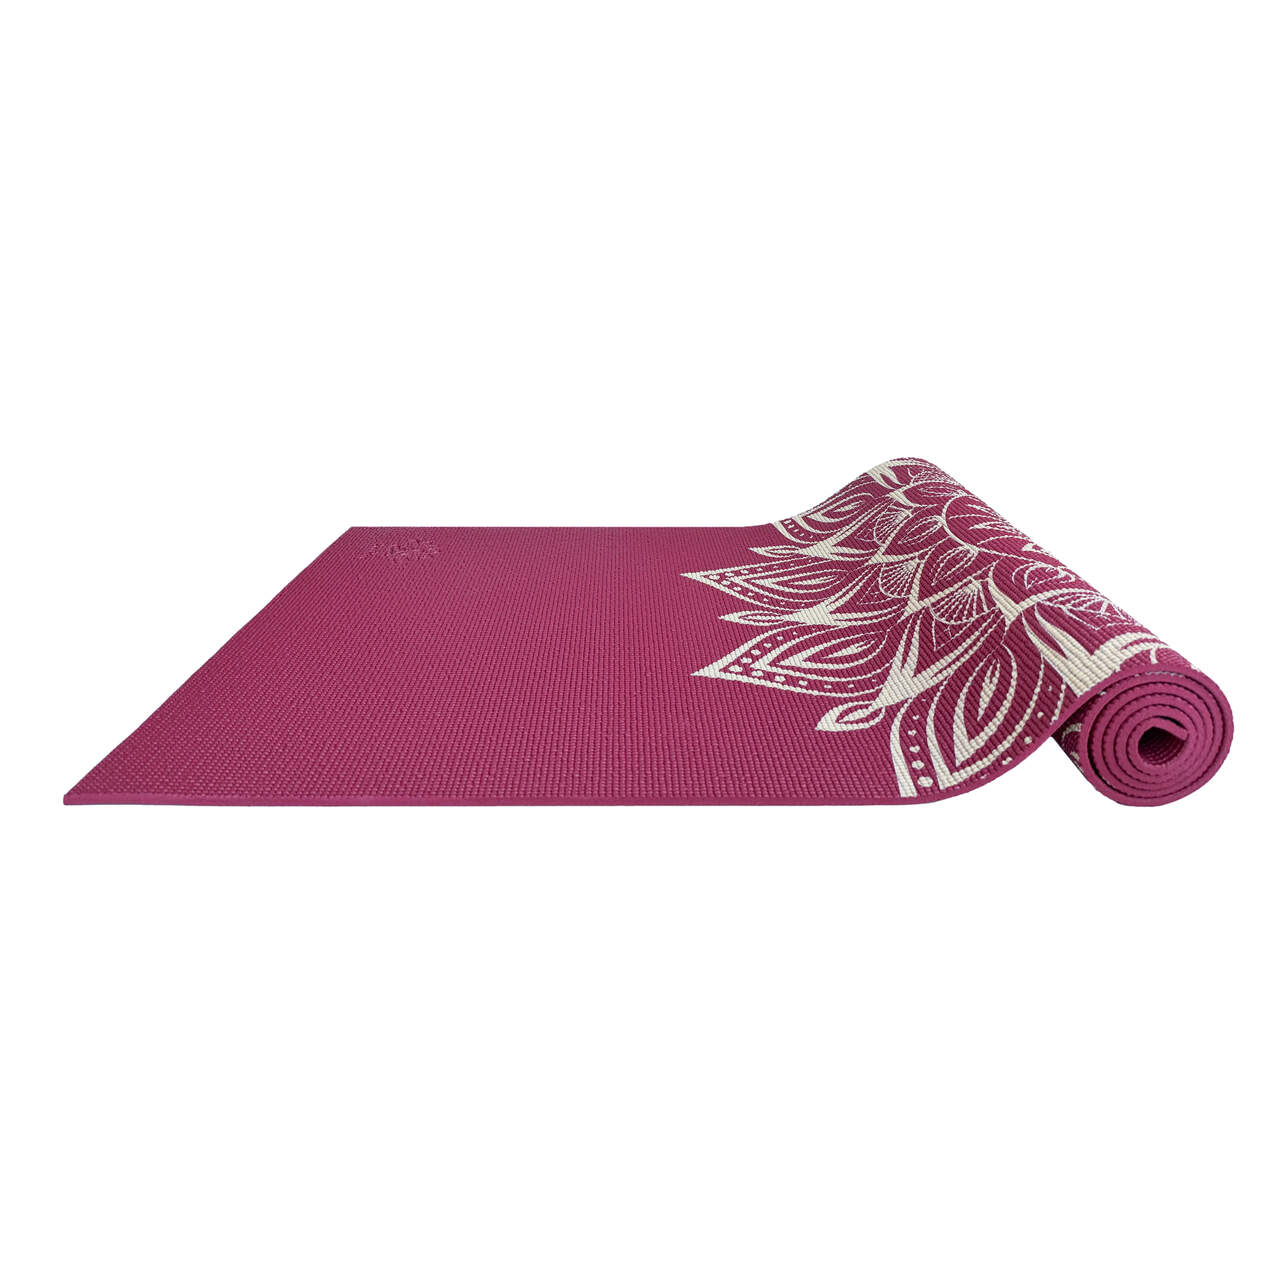 Tapete de Yoga Estampado PVC 6mm - Bali  - Om Joy